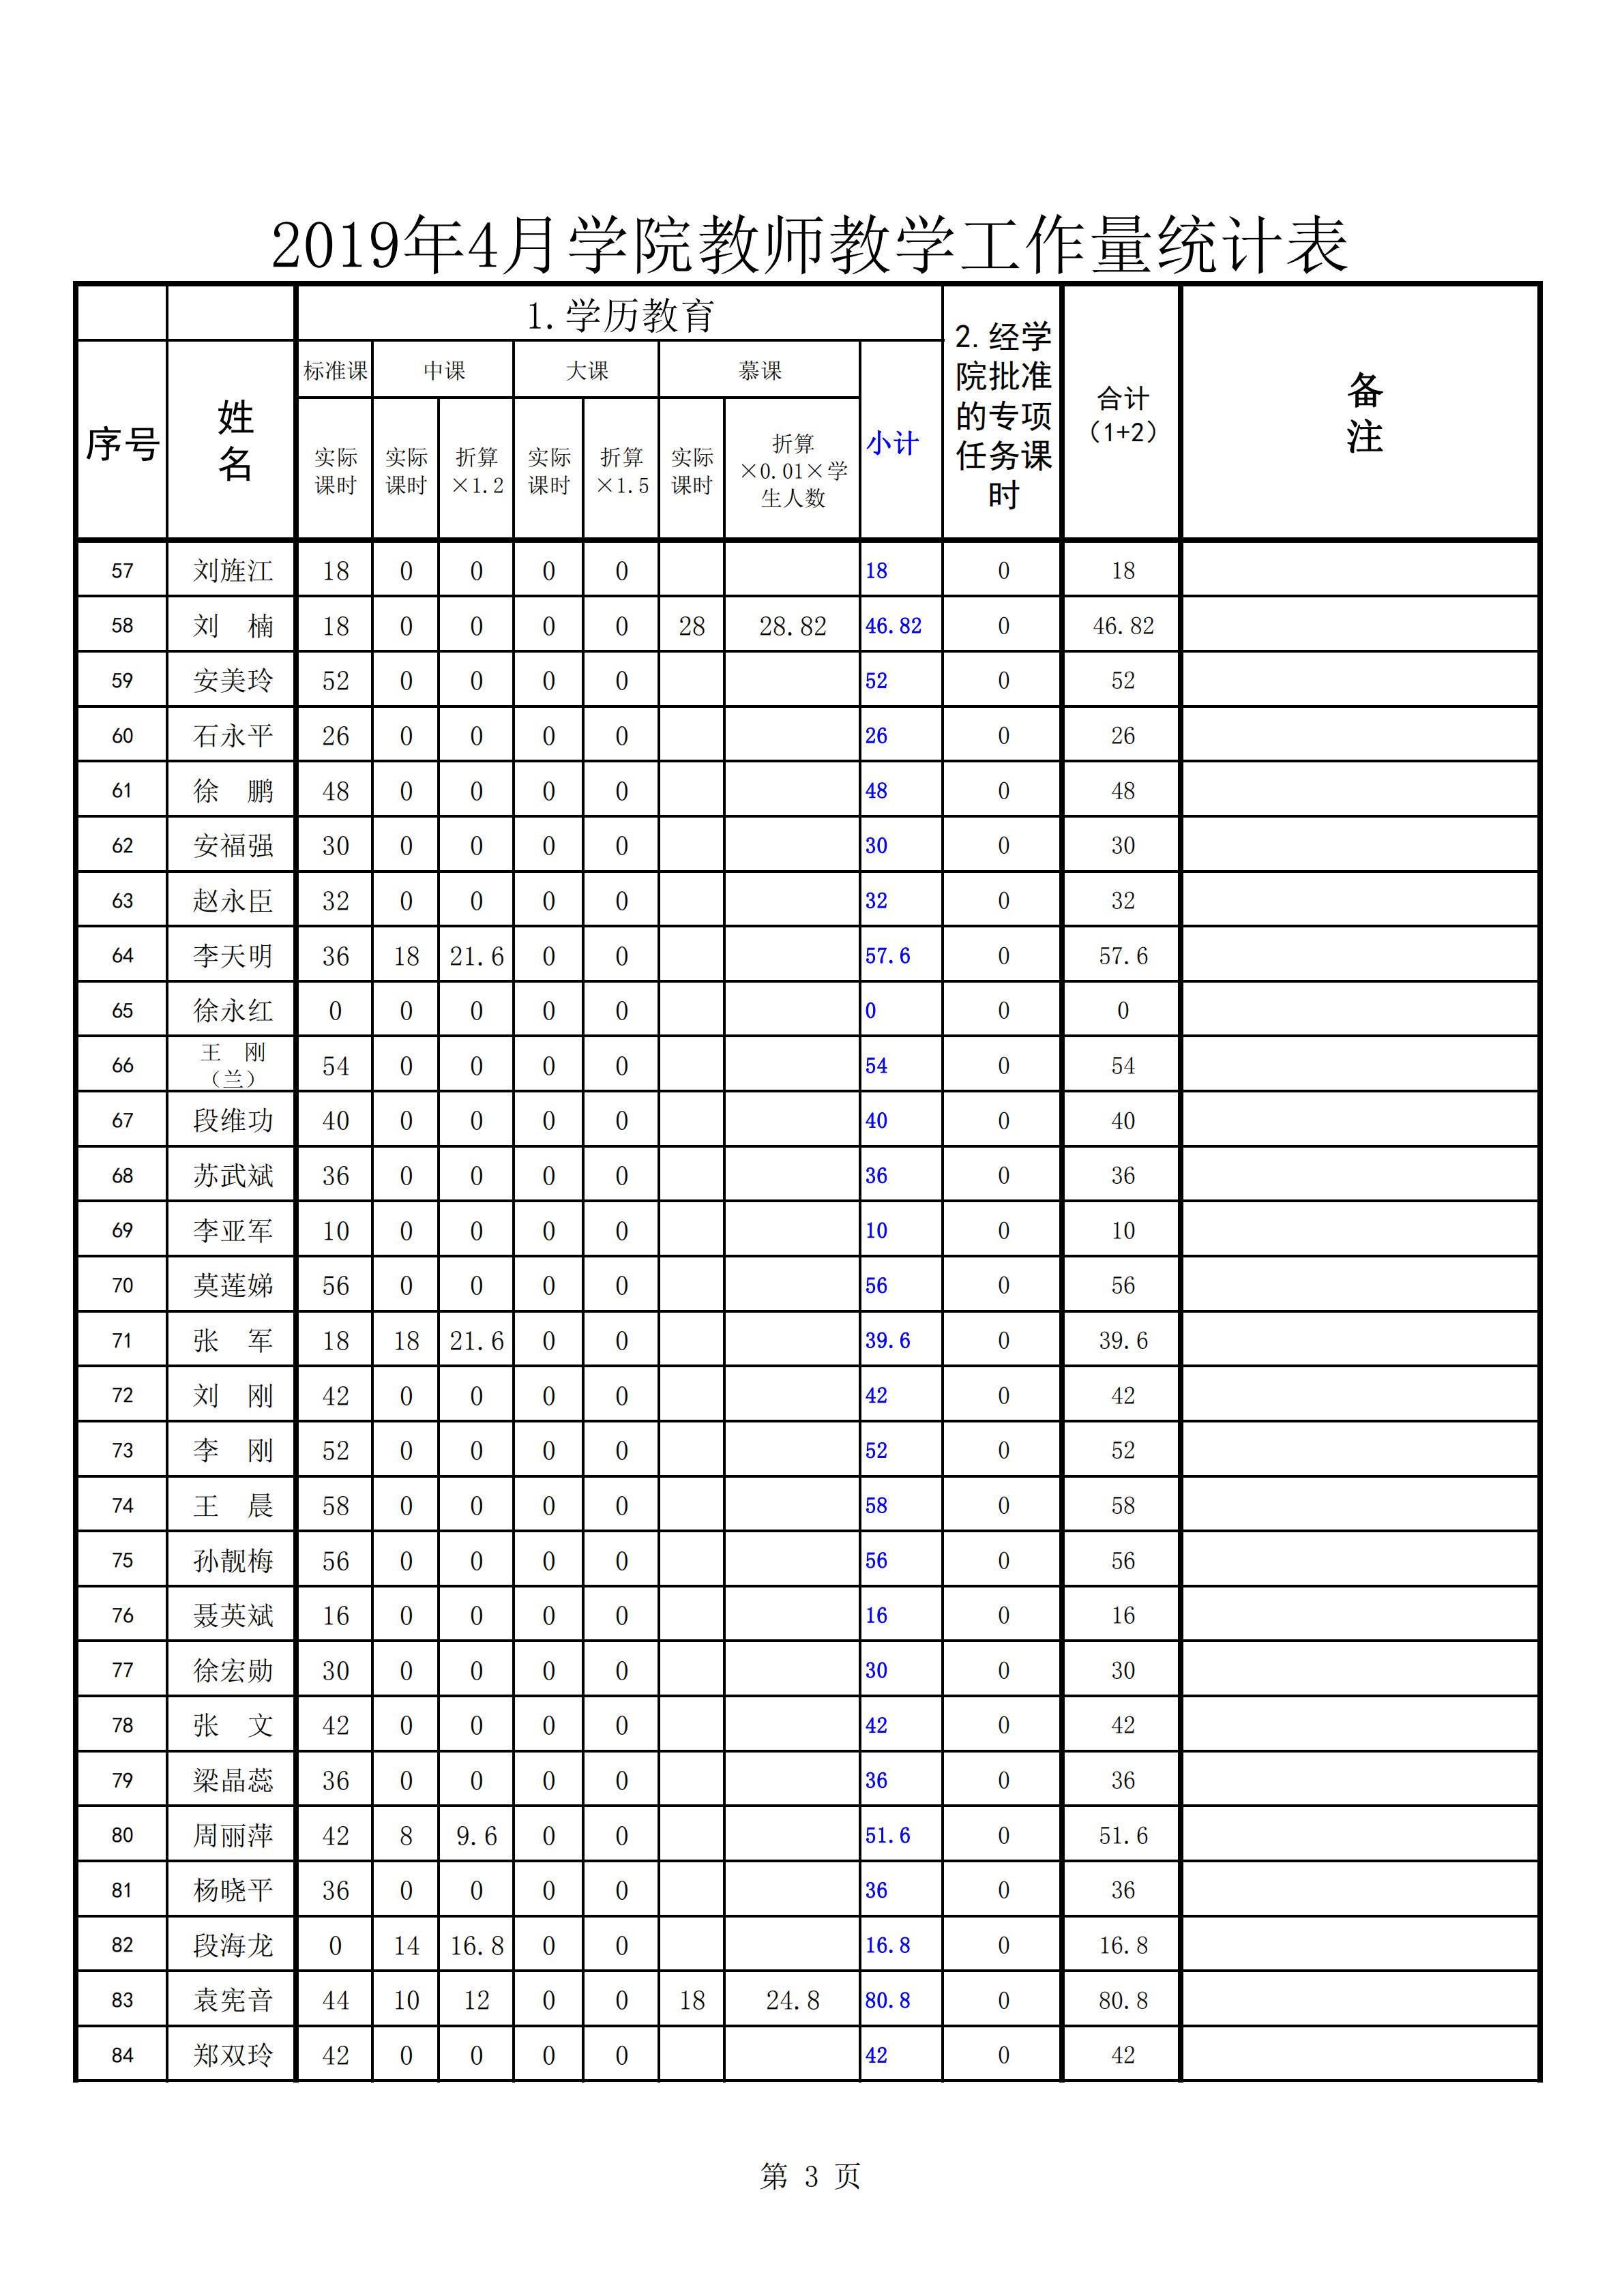 2019年4月份教师教学工作量统计表(公示0505)_02.jpg